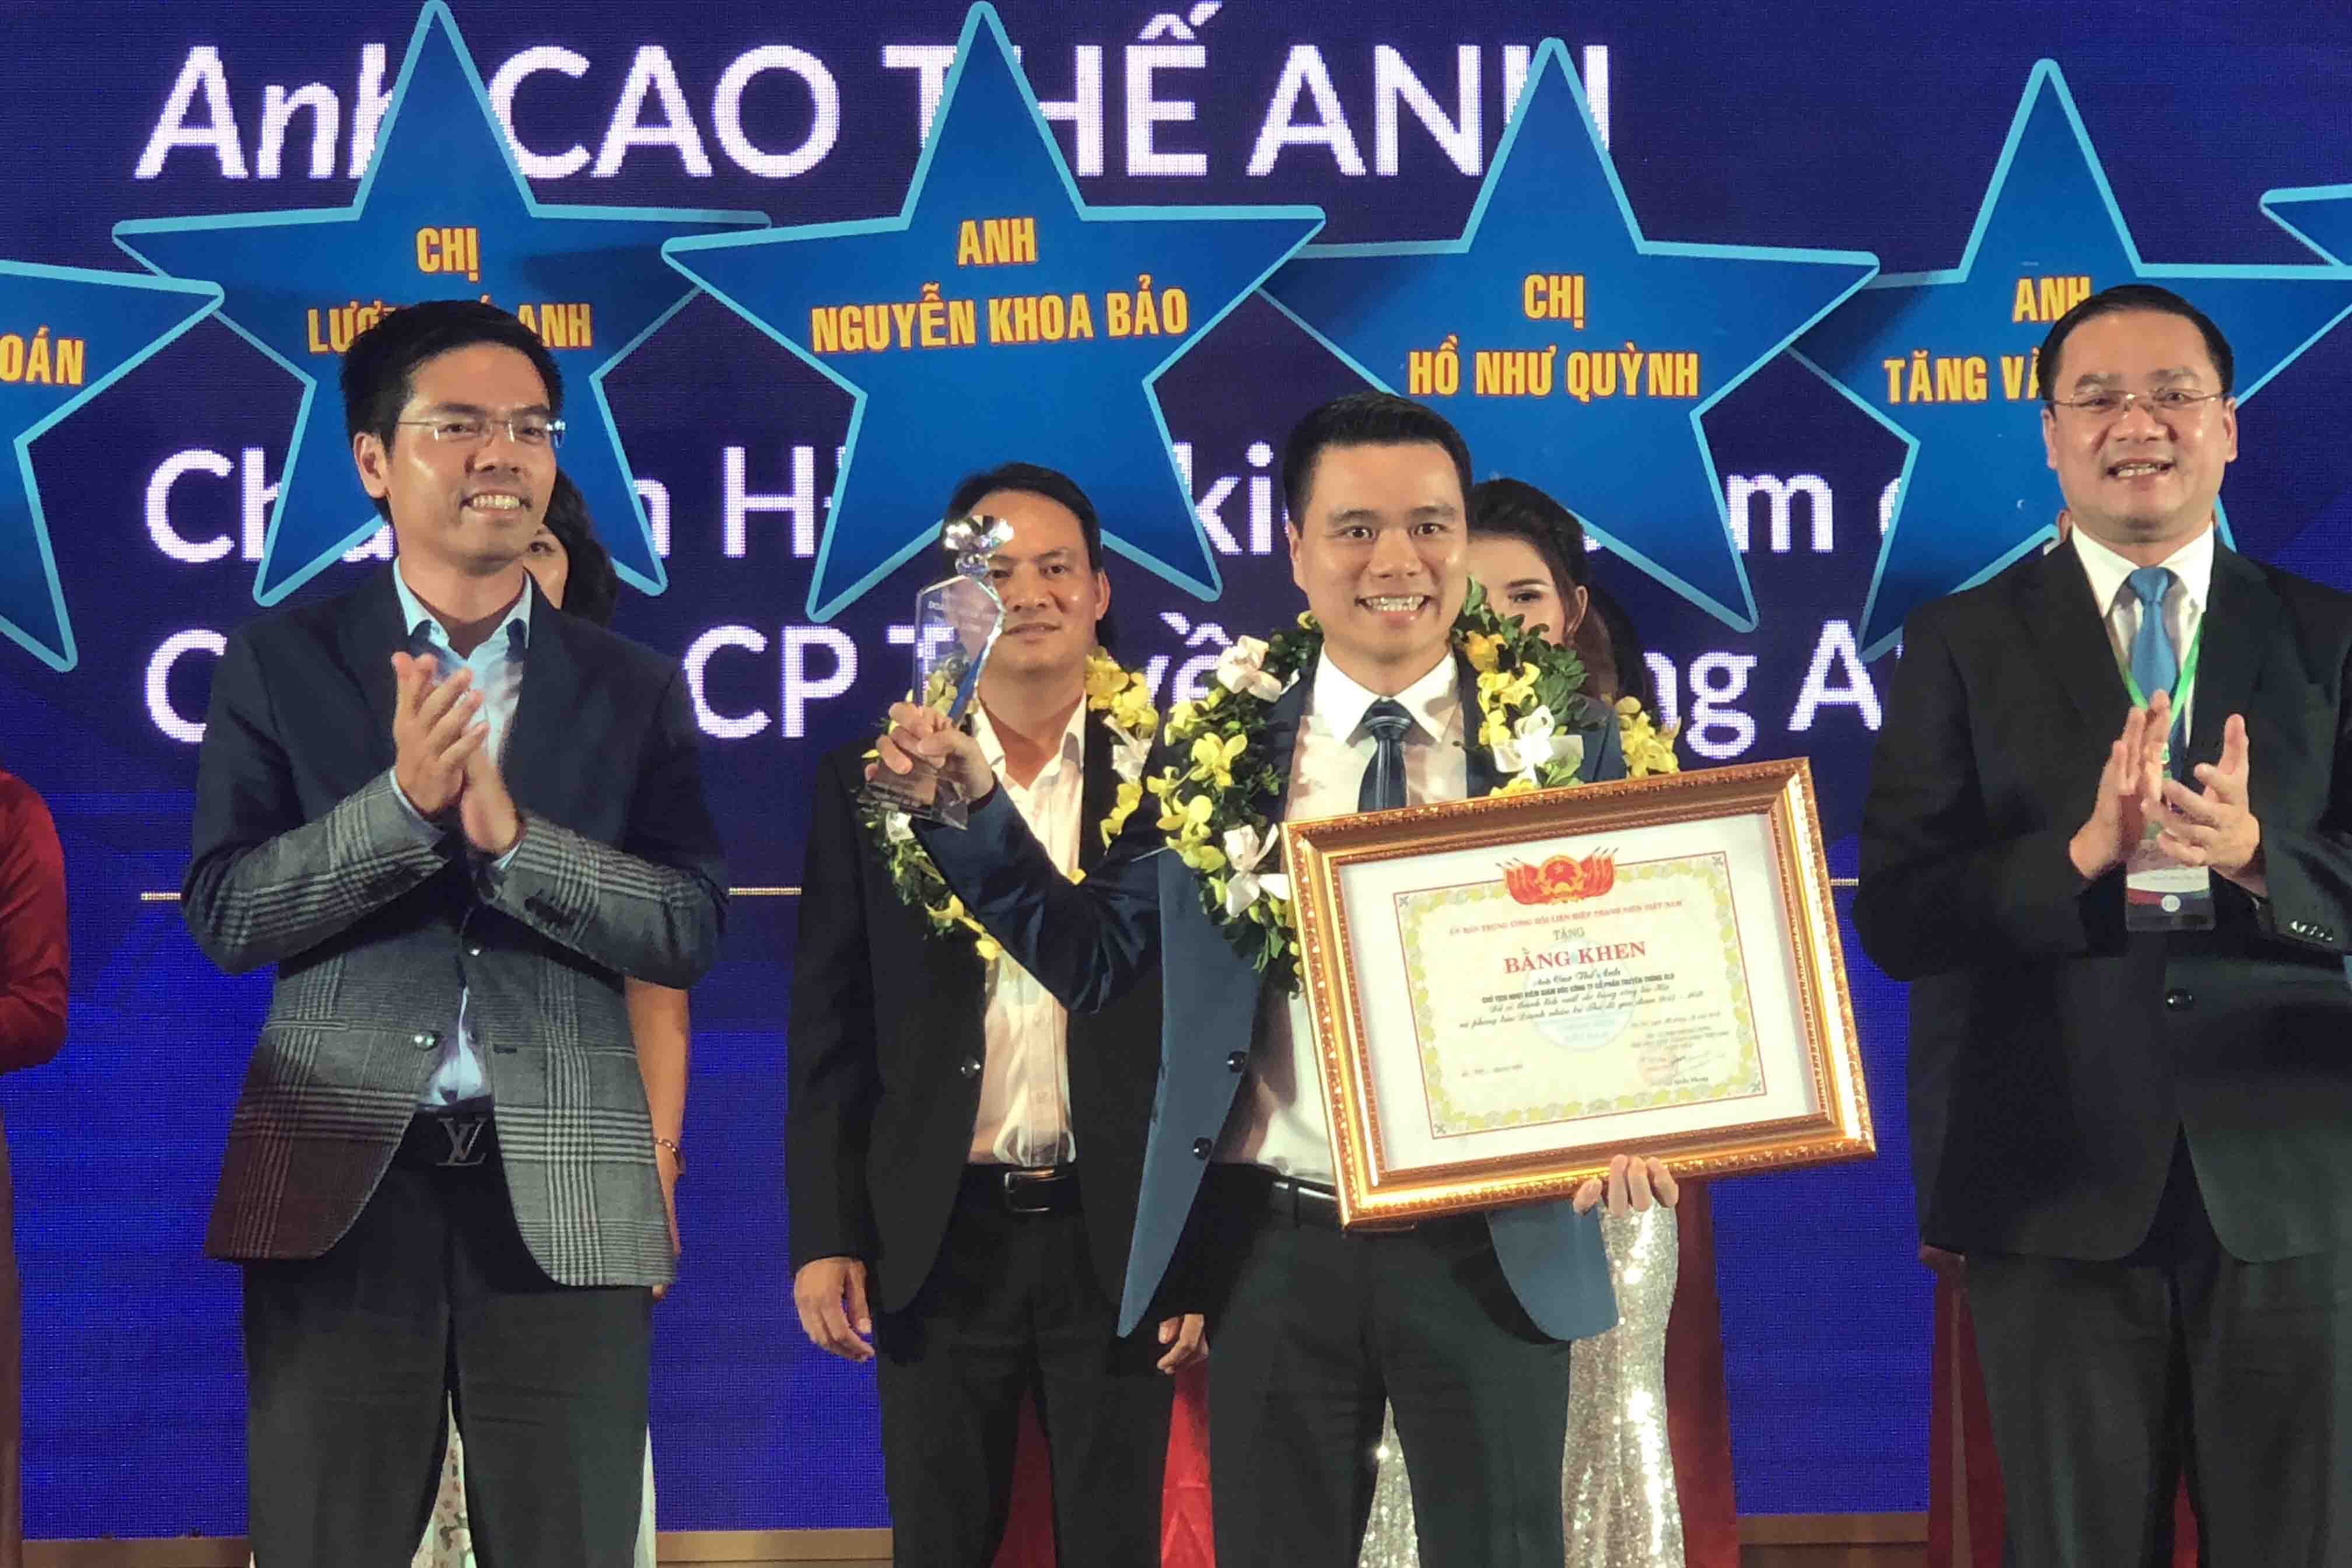 CEO ALO Media – Doanh nhân trẻ Hà Nội không ngại cạnh tranh sòng phẳng